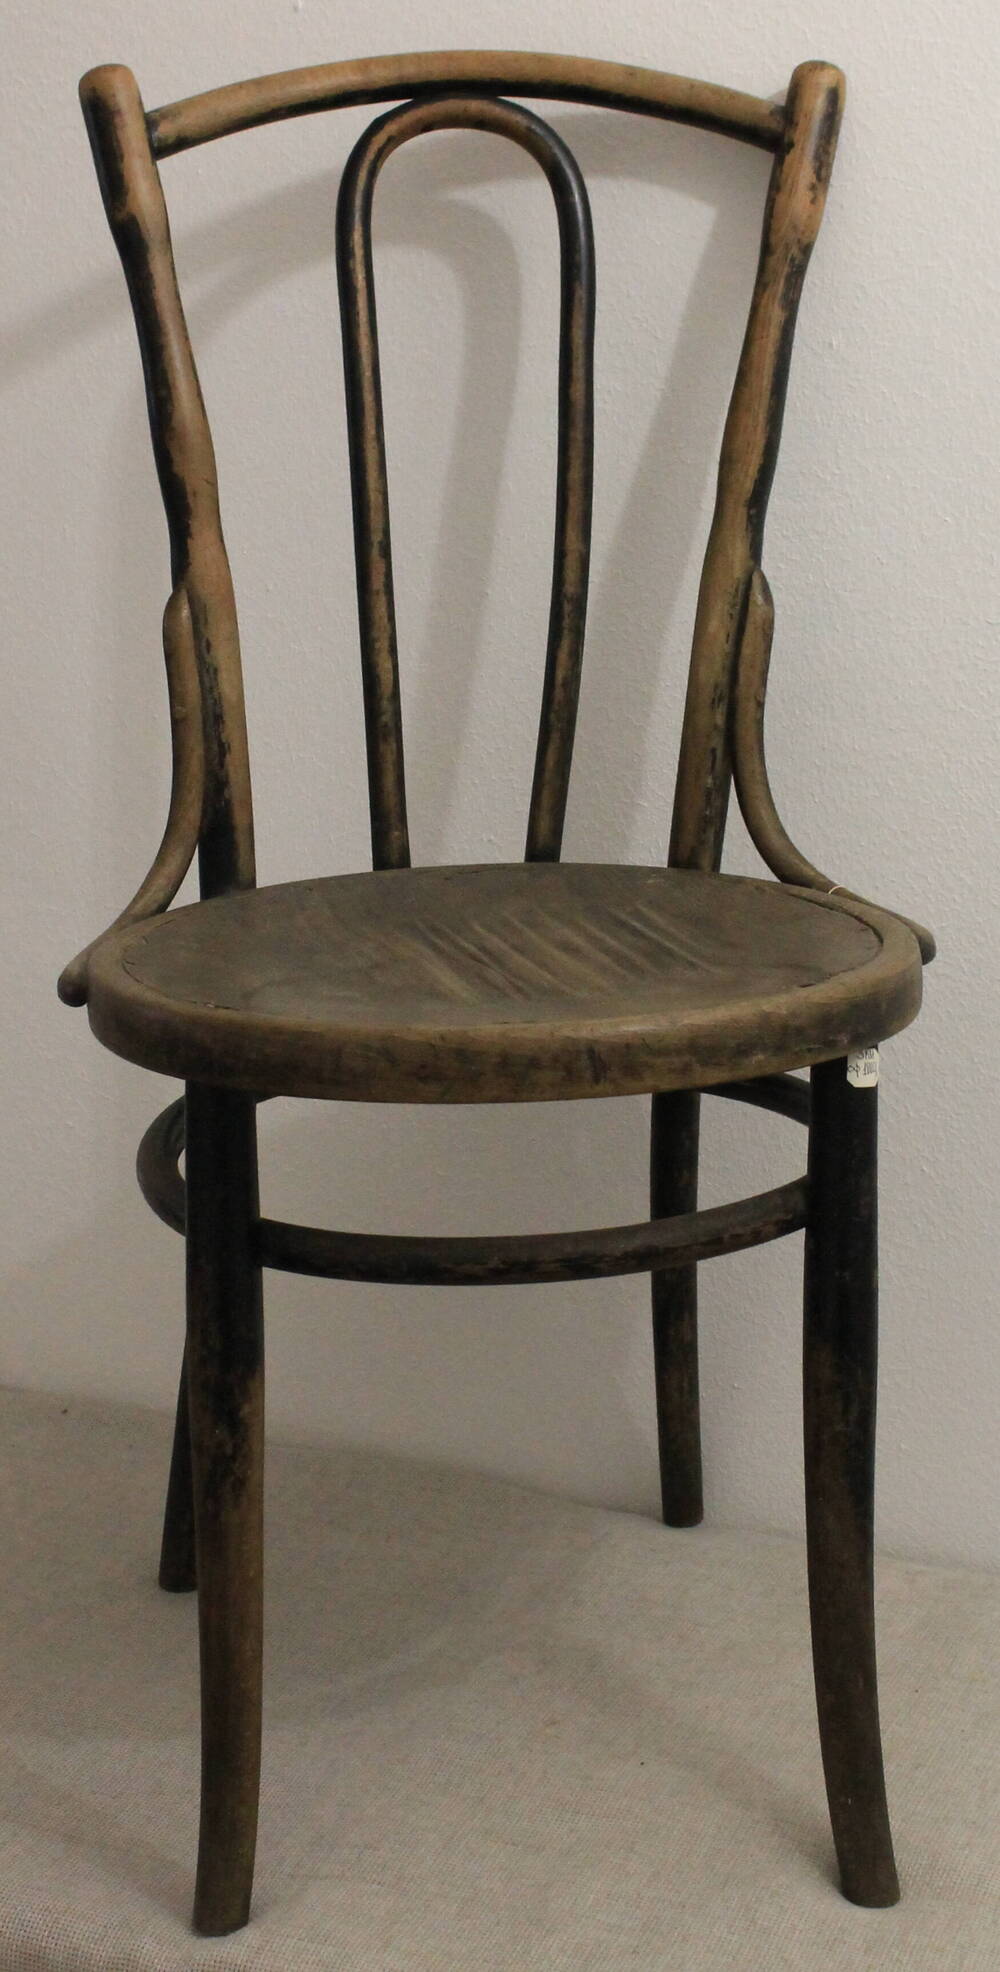 Стулья
венские с округлыми гнутыми спинками. На 3-х стульях рисунок. На сиденьях рисунок – отверстия. Один стул сиденье – без рисунка.